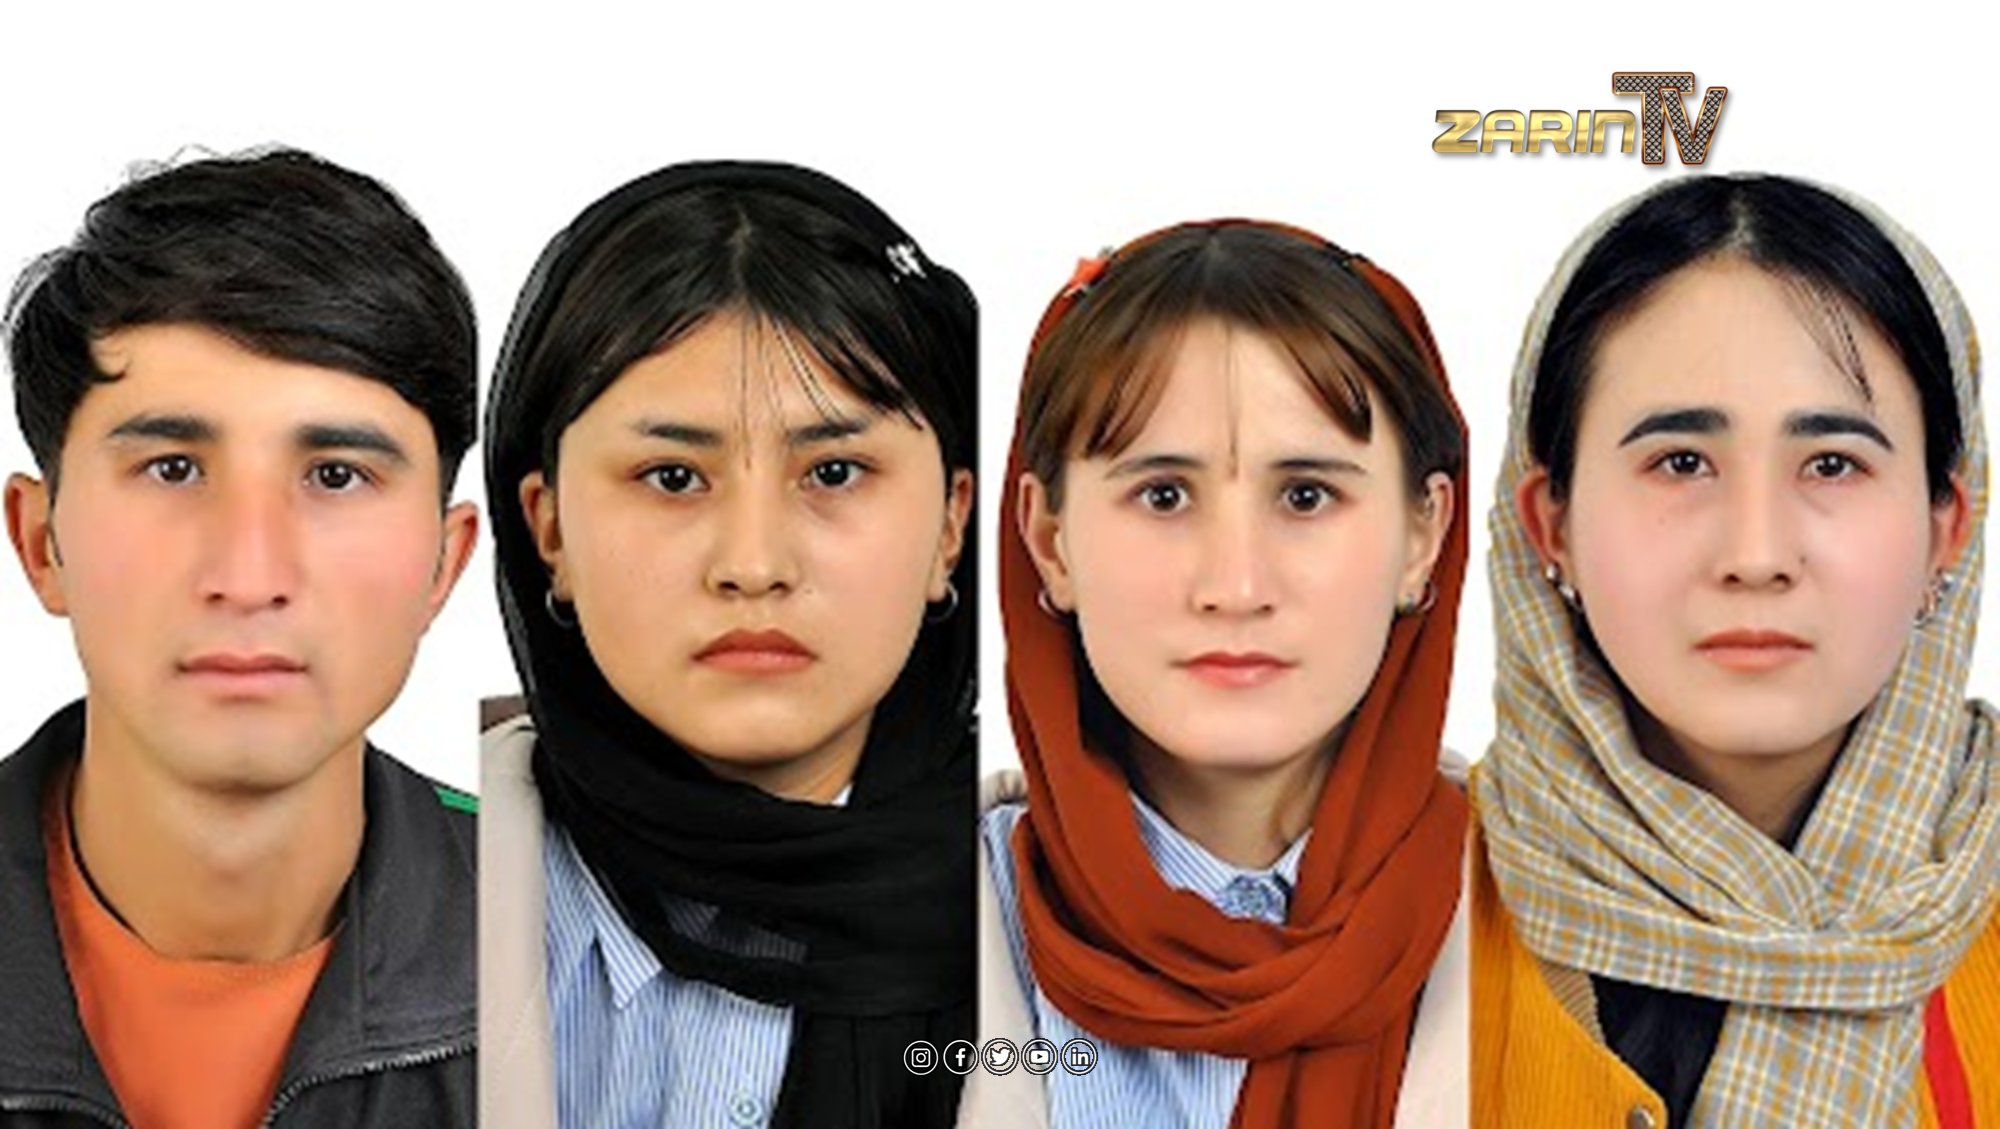 بازداشت سه دختر متعرض و برادر شان از سوی طالبان